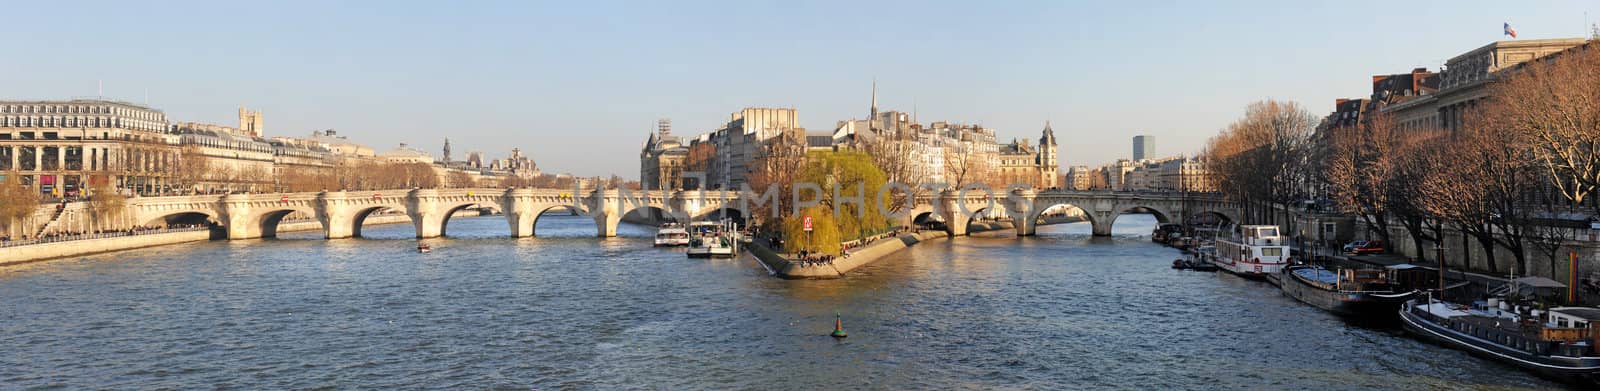 France, Paris, panoramic view of river Seine and Ile de la Cite